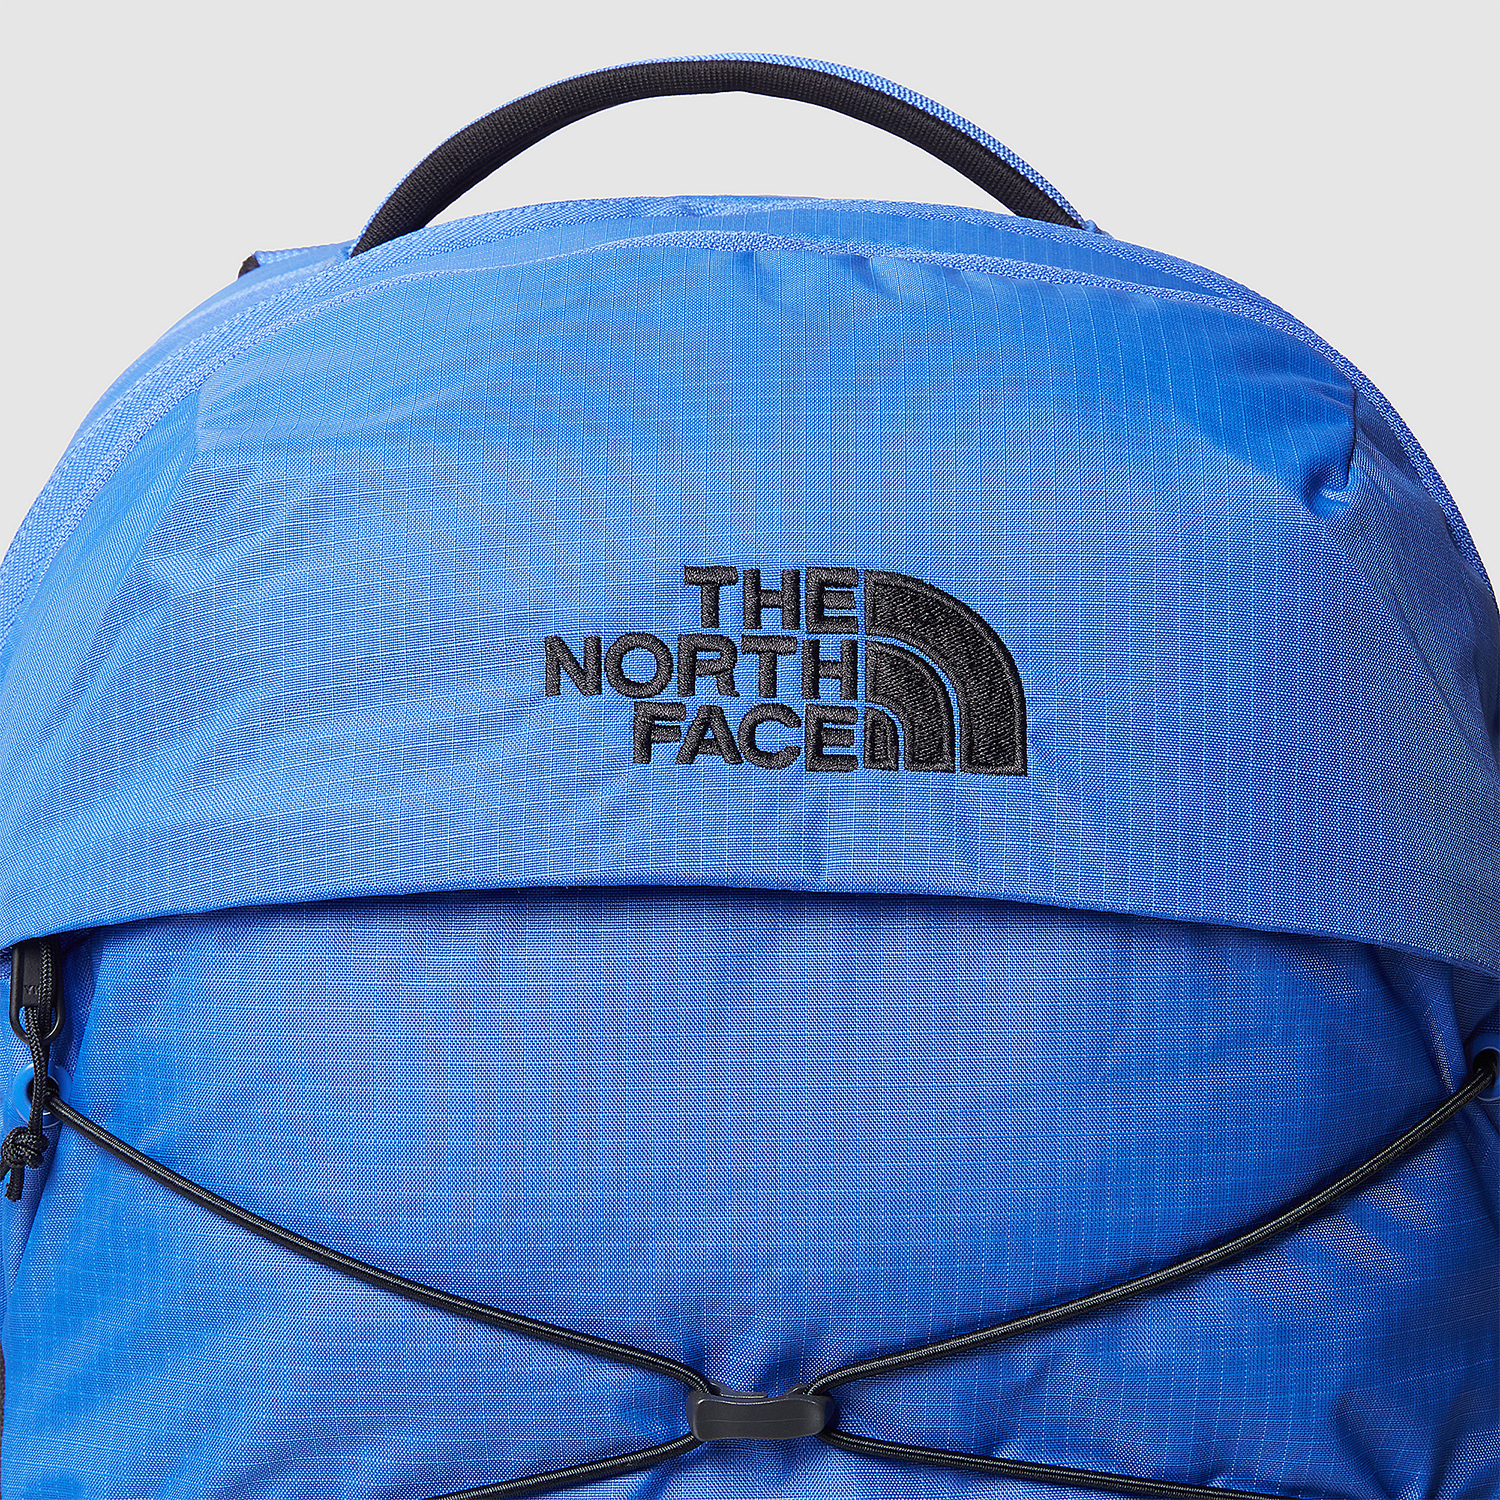 The North Face Borealis Mochila - Solar Blue/TNF Black